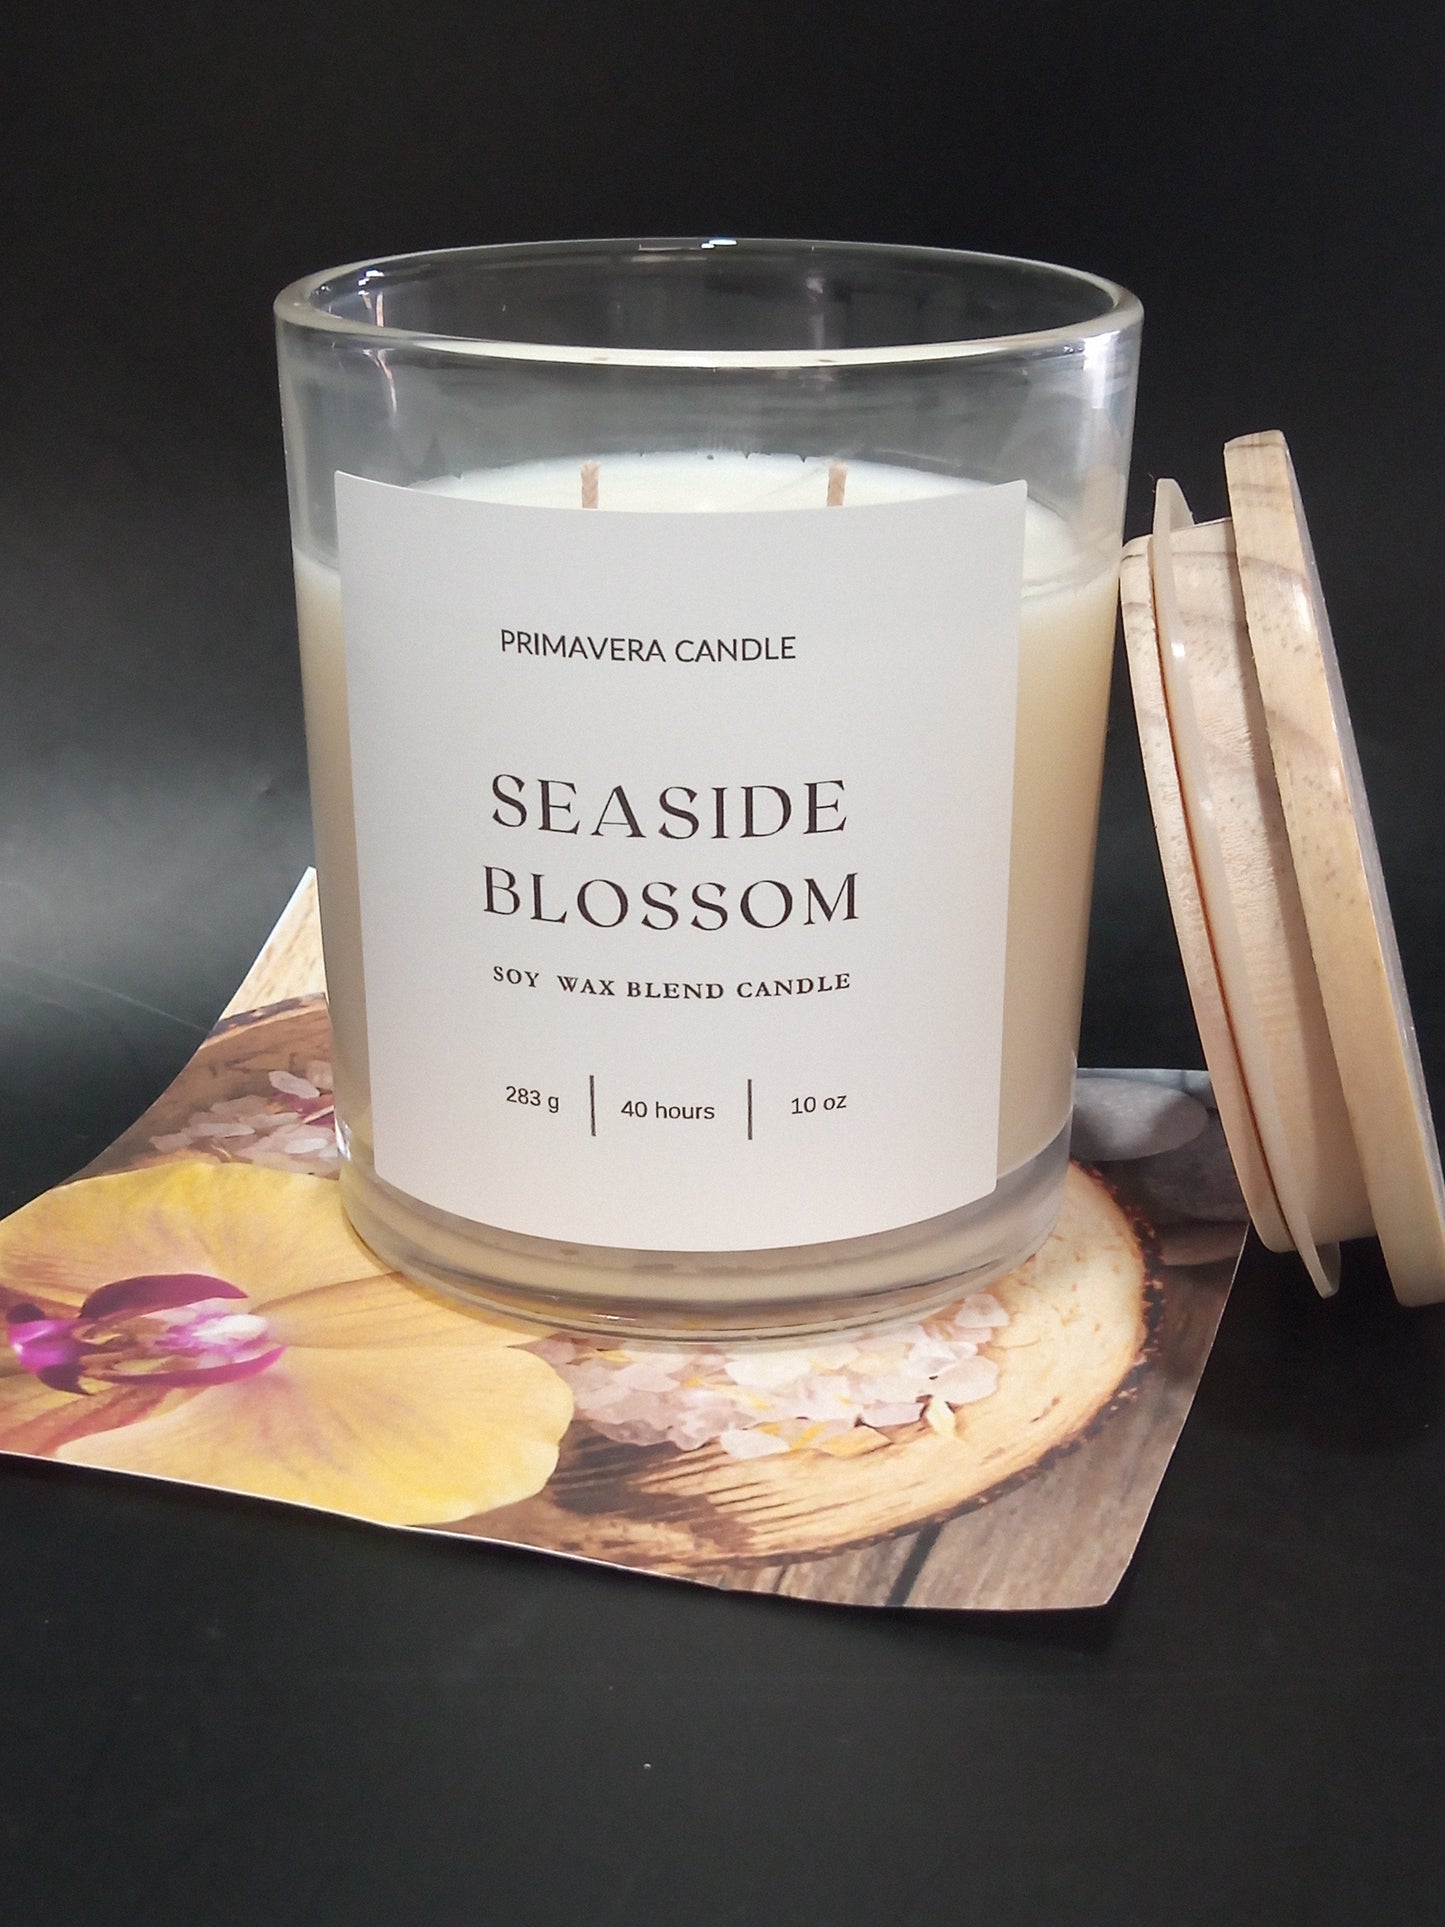 Seaside Blossom